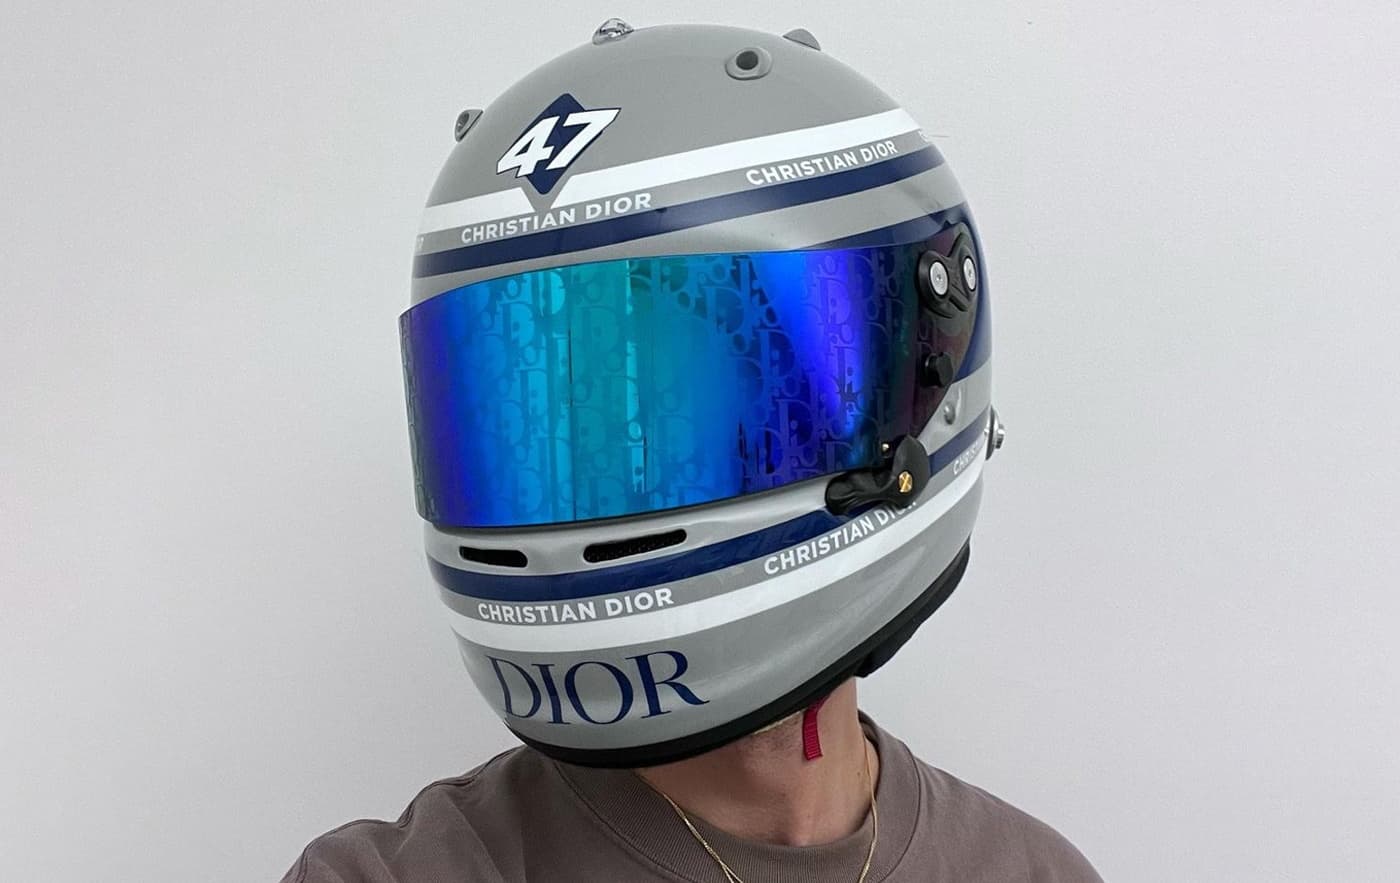 Кастомизированный гоночный шлем Dior, созданный для игры Gran Turismo 7